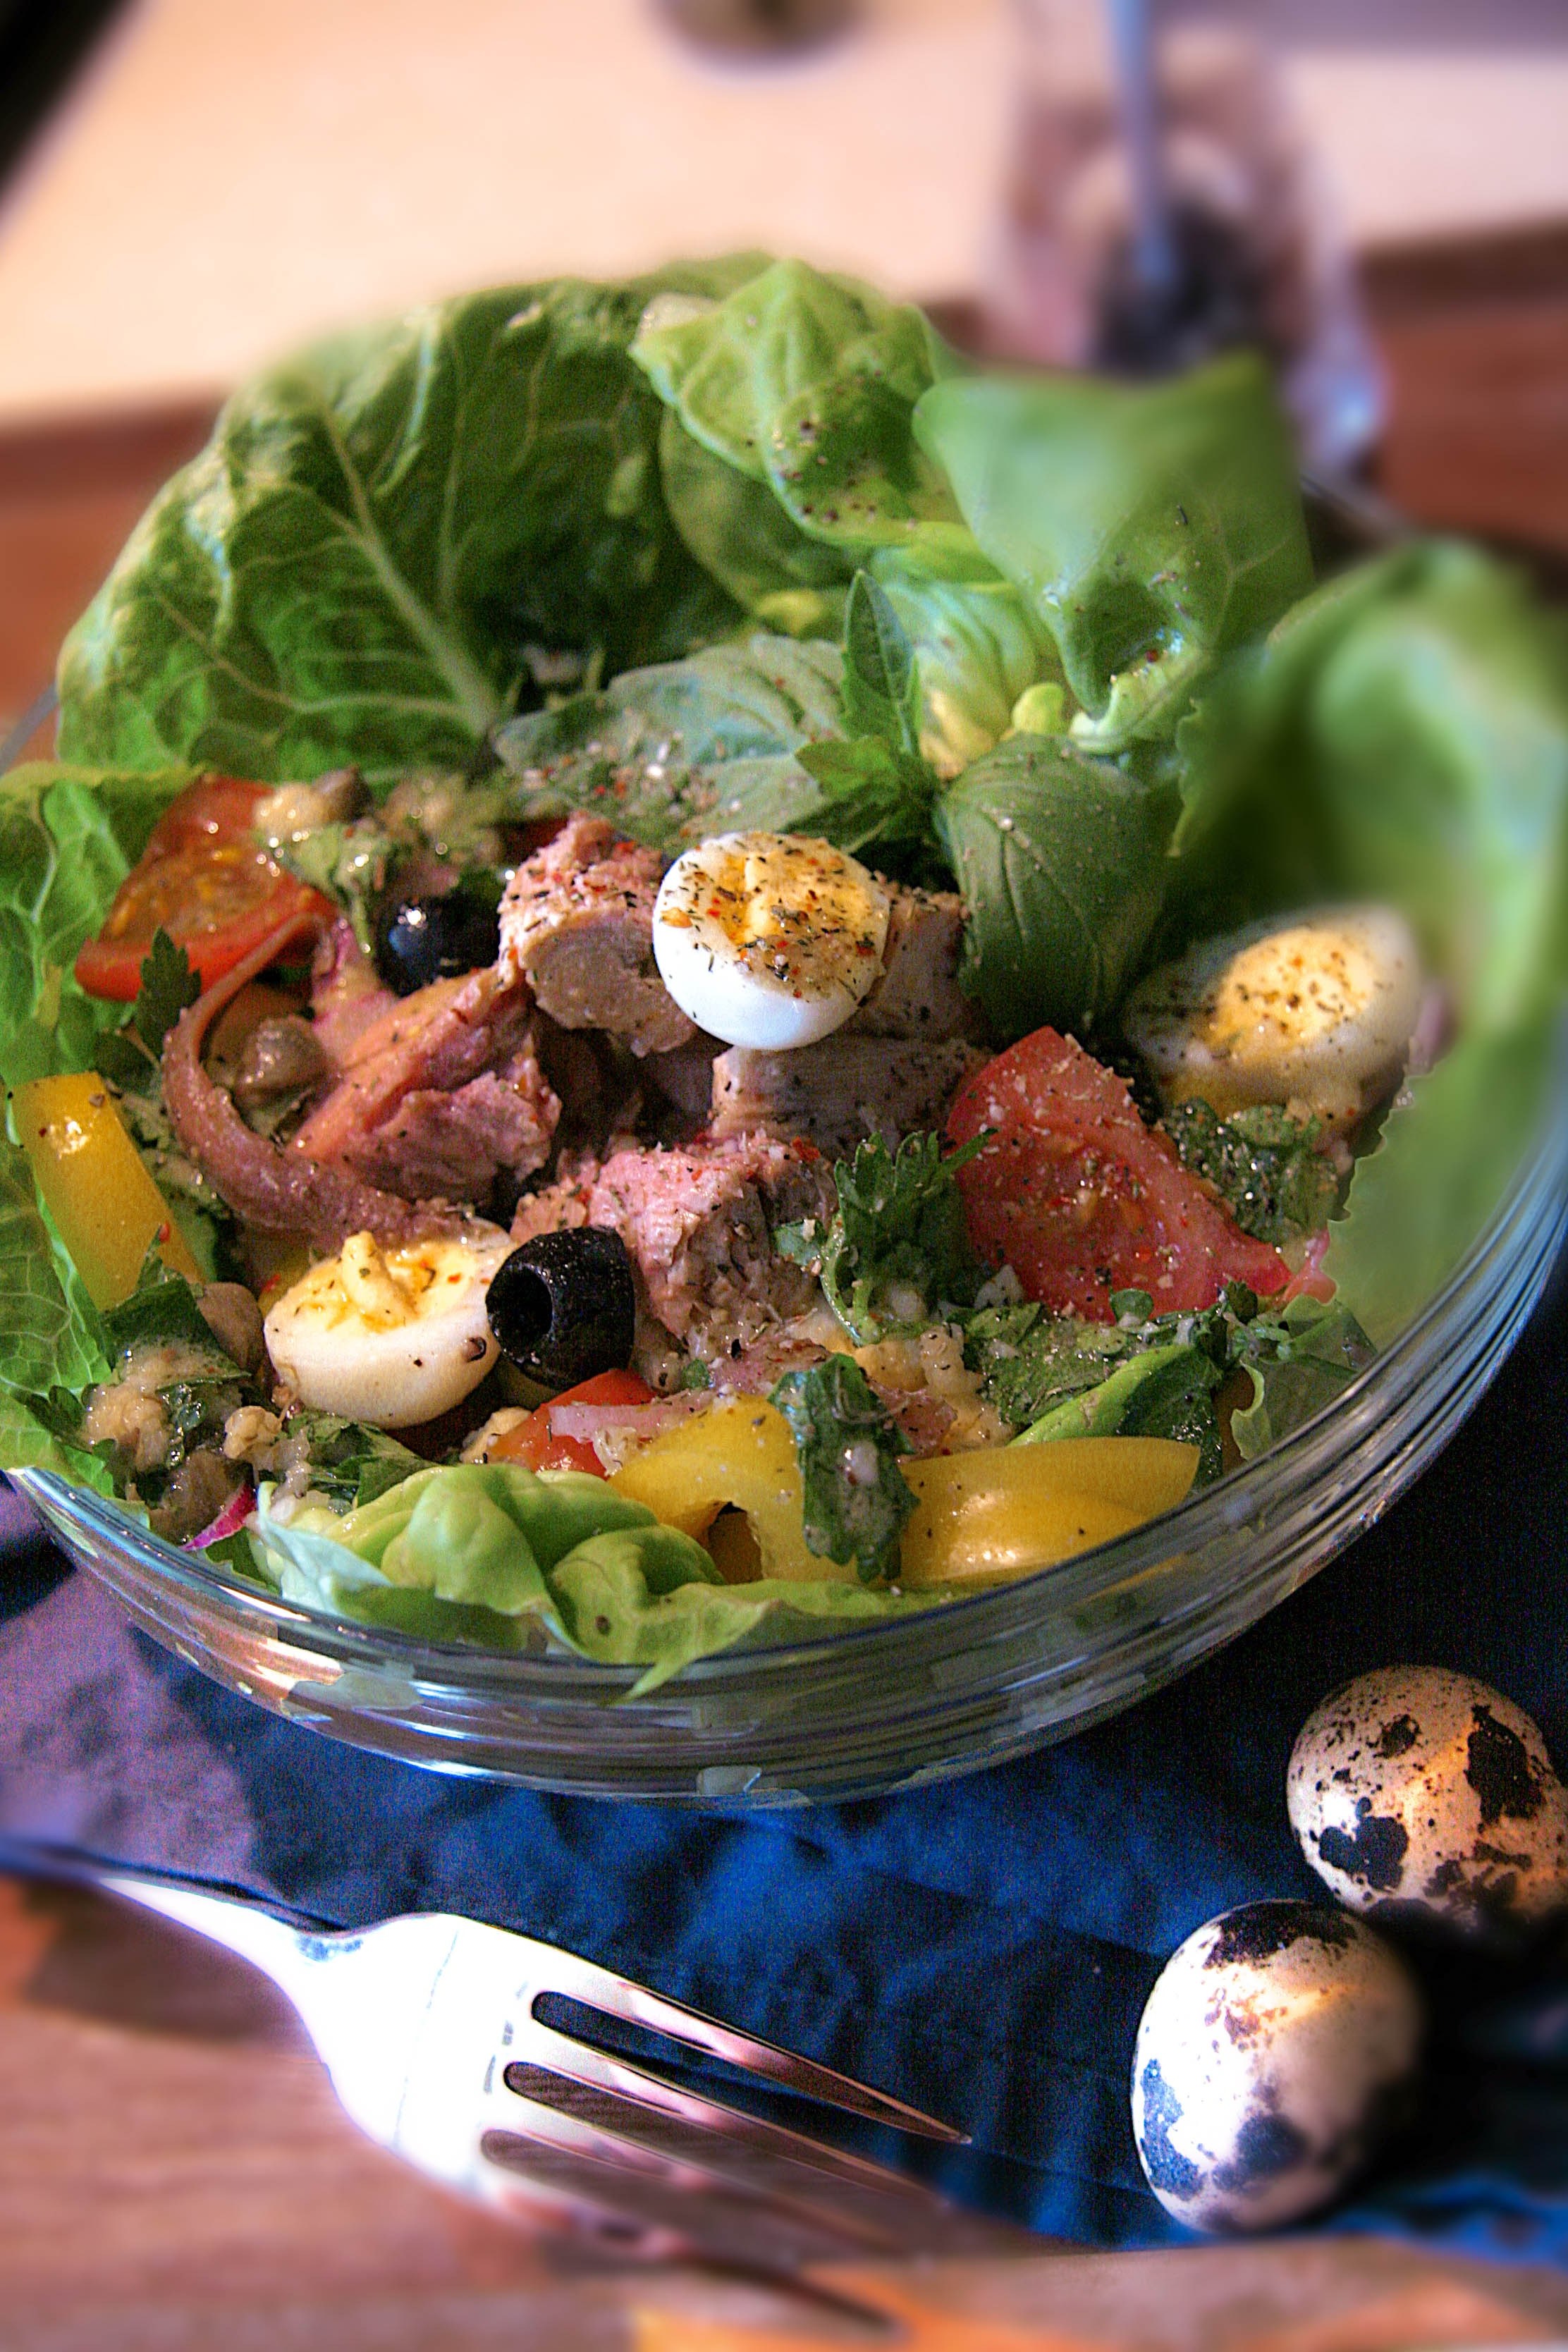 Салат французский со свежими овощами и мясом - пошаговый рецепт с фото